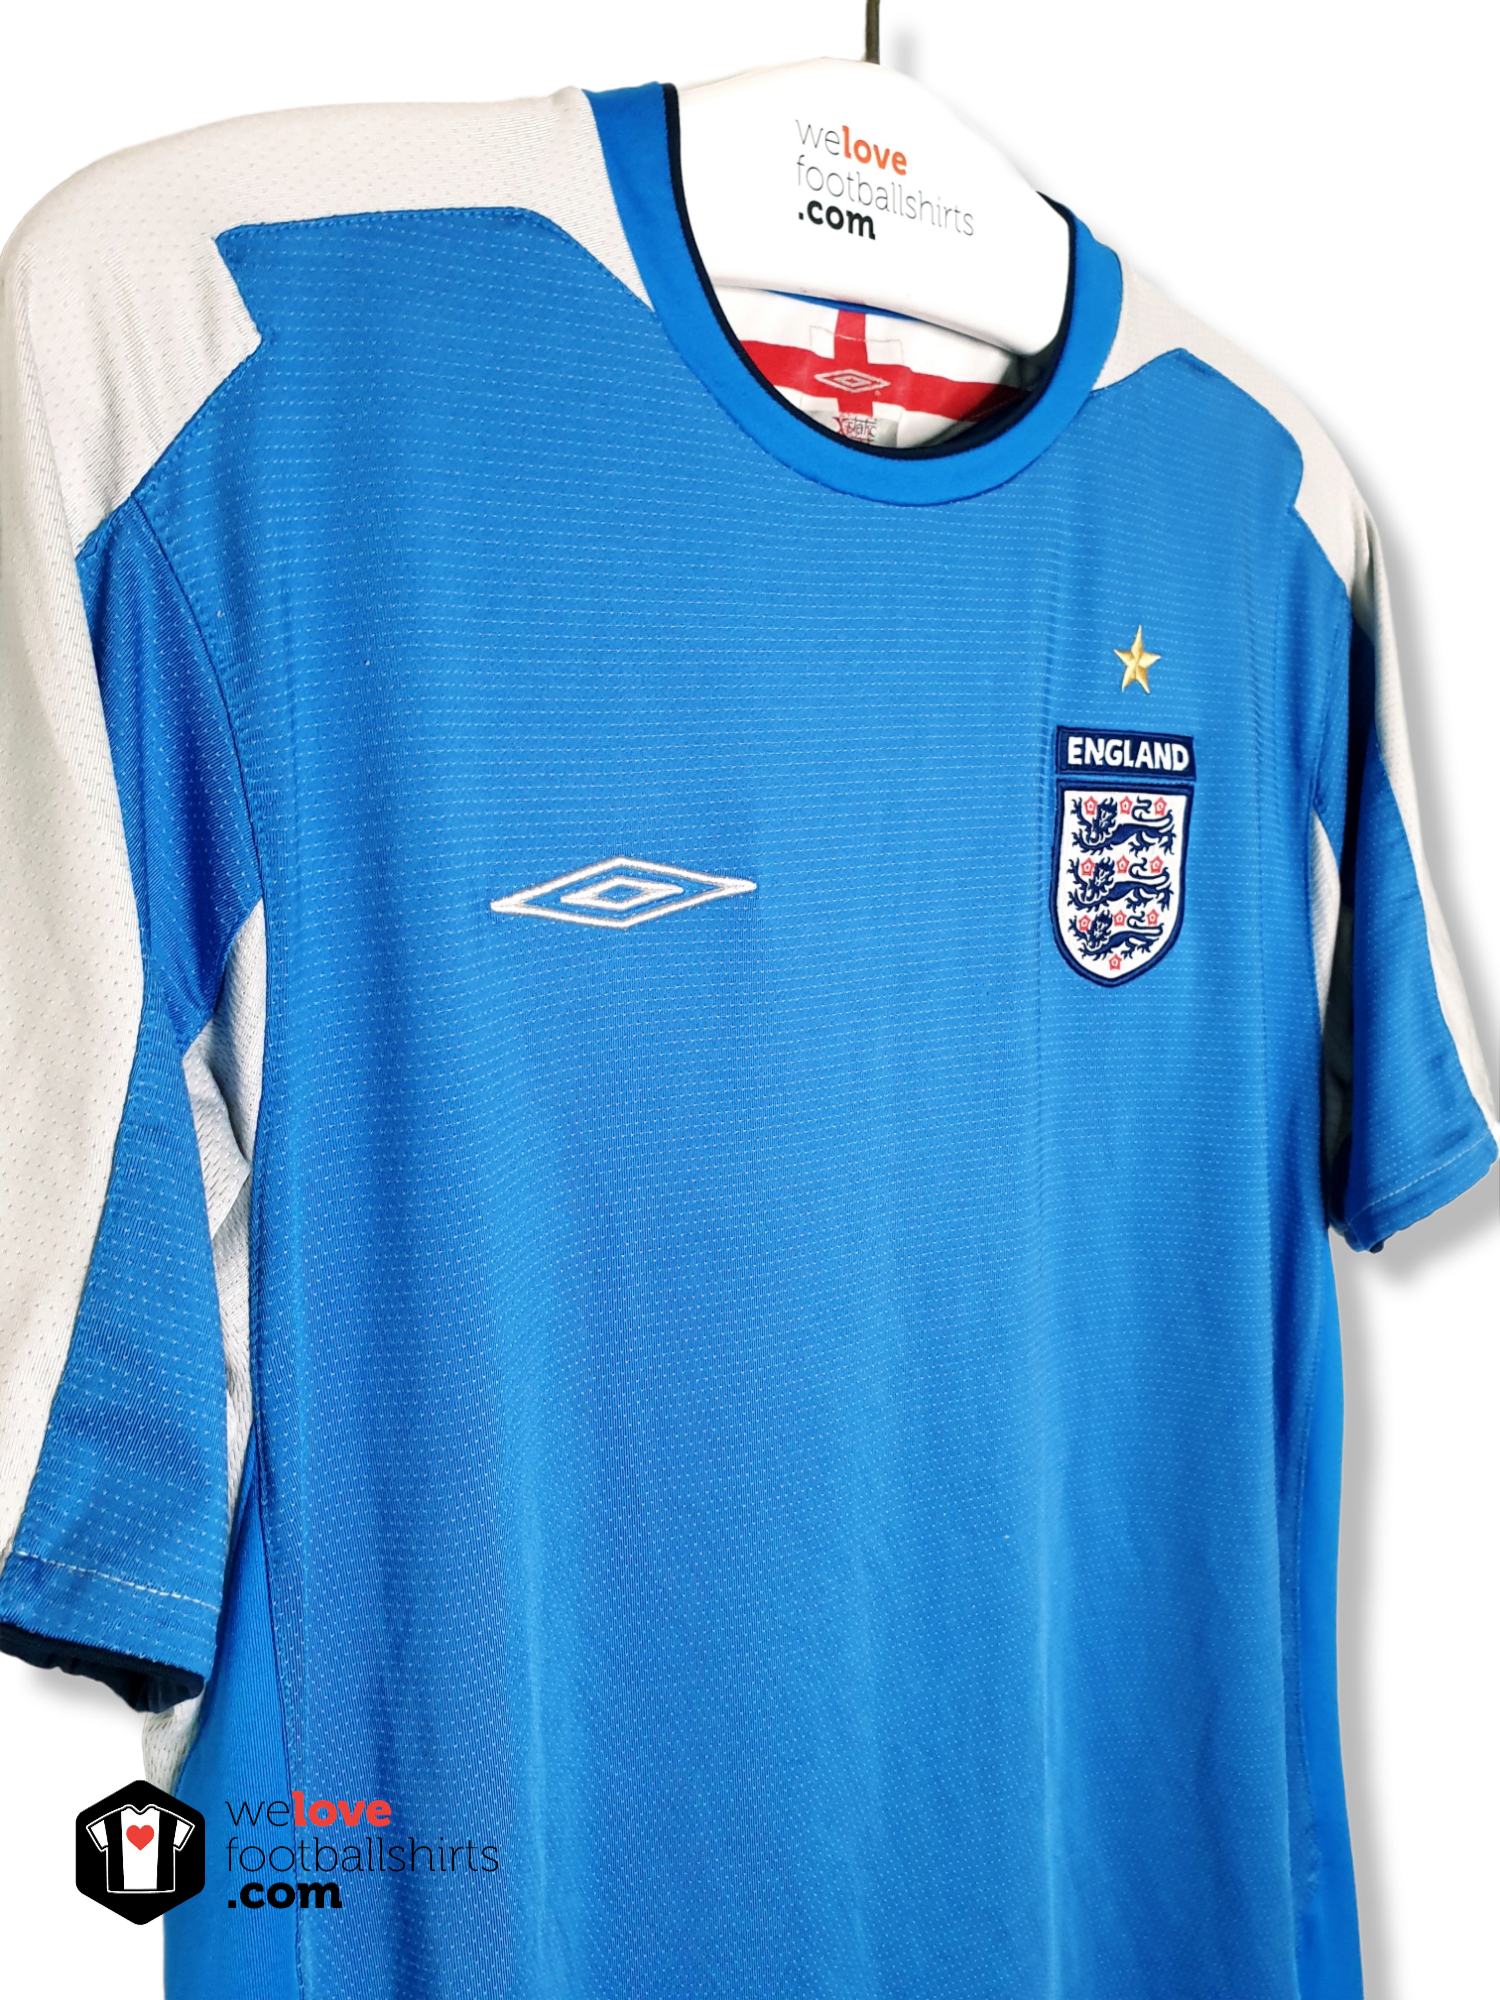 haar Grondwet stok Umbro keepersshirt Engeland World Cup 2002 - Welovefootballshirts.com